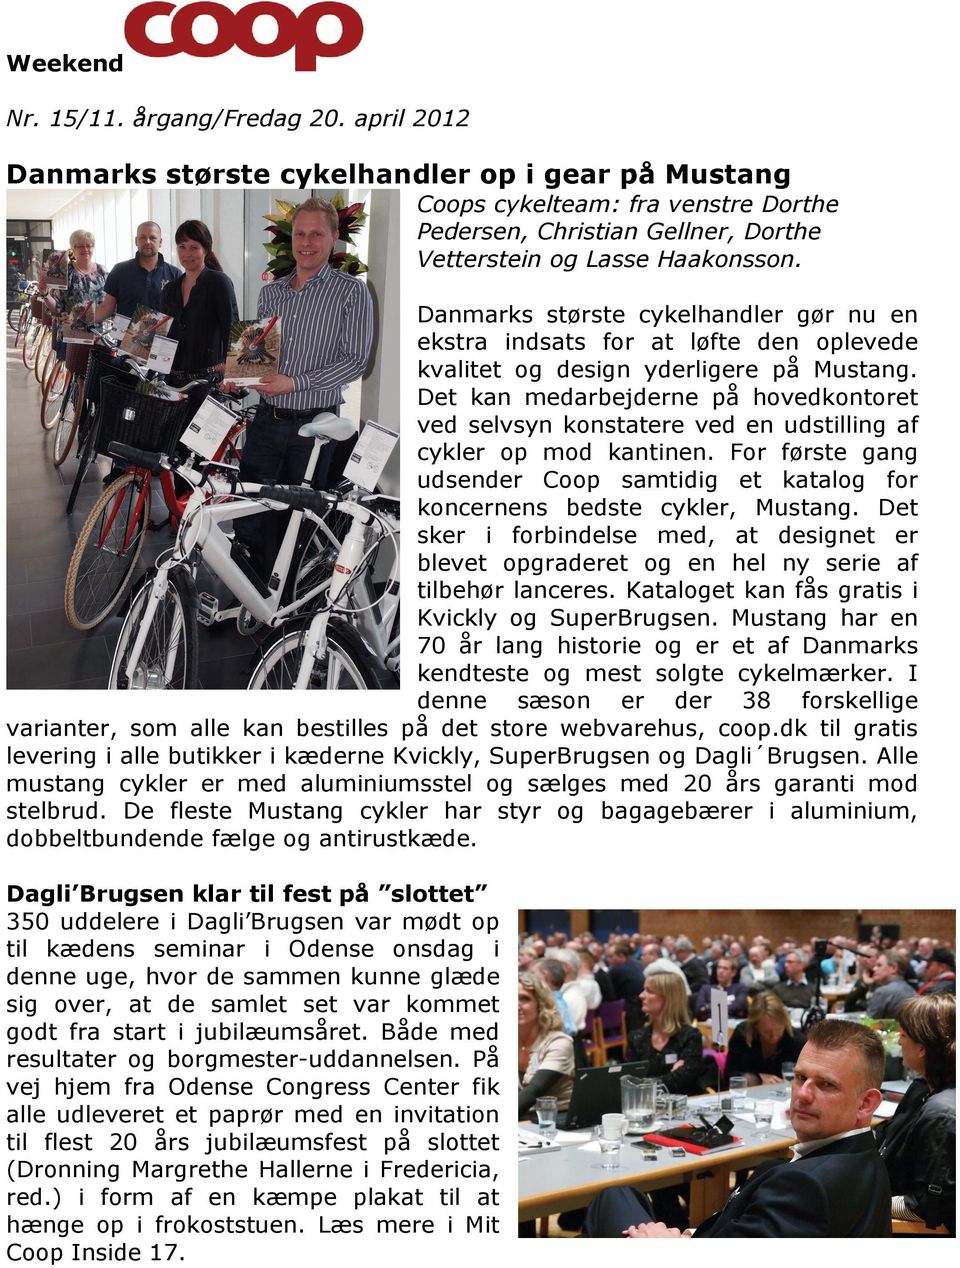 Danmarks største cykelhandler gør nu en ekstra indsats for at løfte den oplevede kvalitet og design yderligere på Mustang.